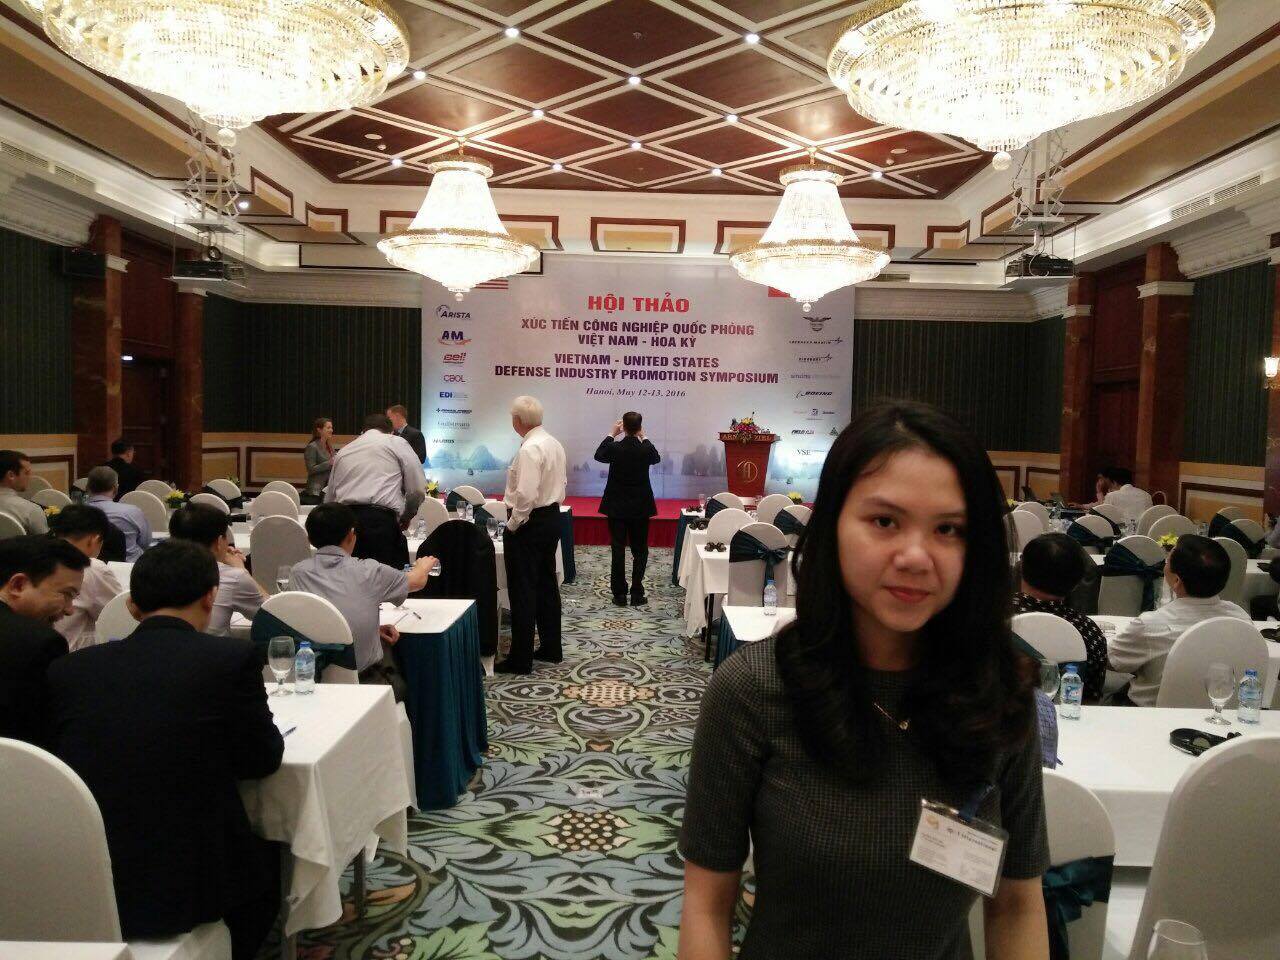 Chủ tịch Công ty Quốc tế tham dự Hội thảo xúc tiến Công nghiệp Quốc Phòng Việt Nam - Hoa Kỳ (5/2016)